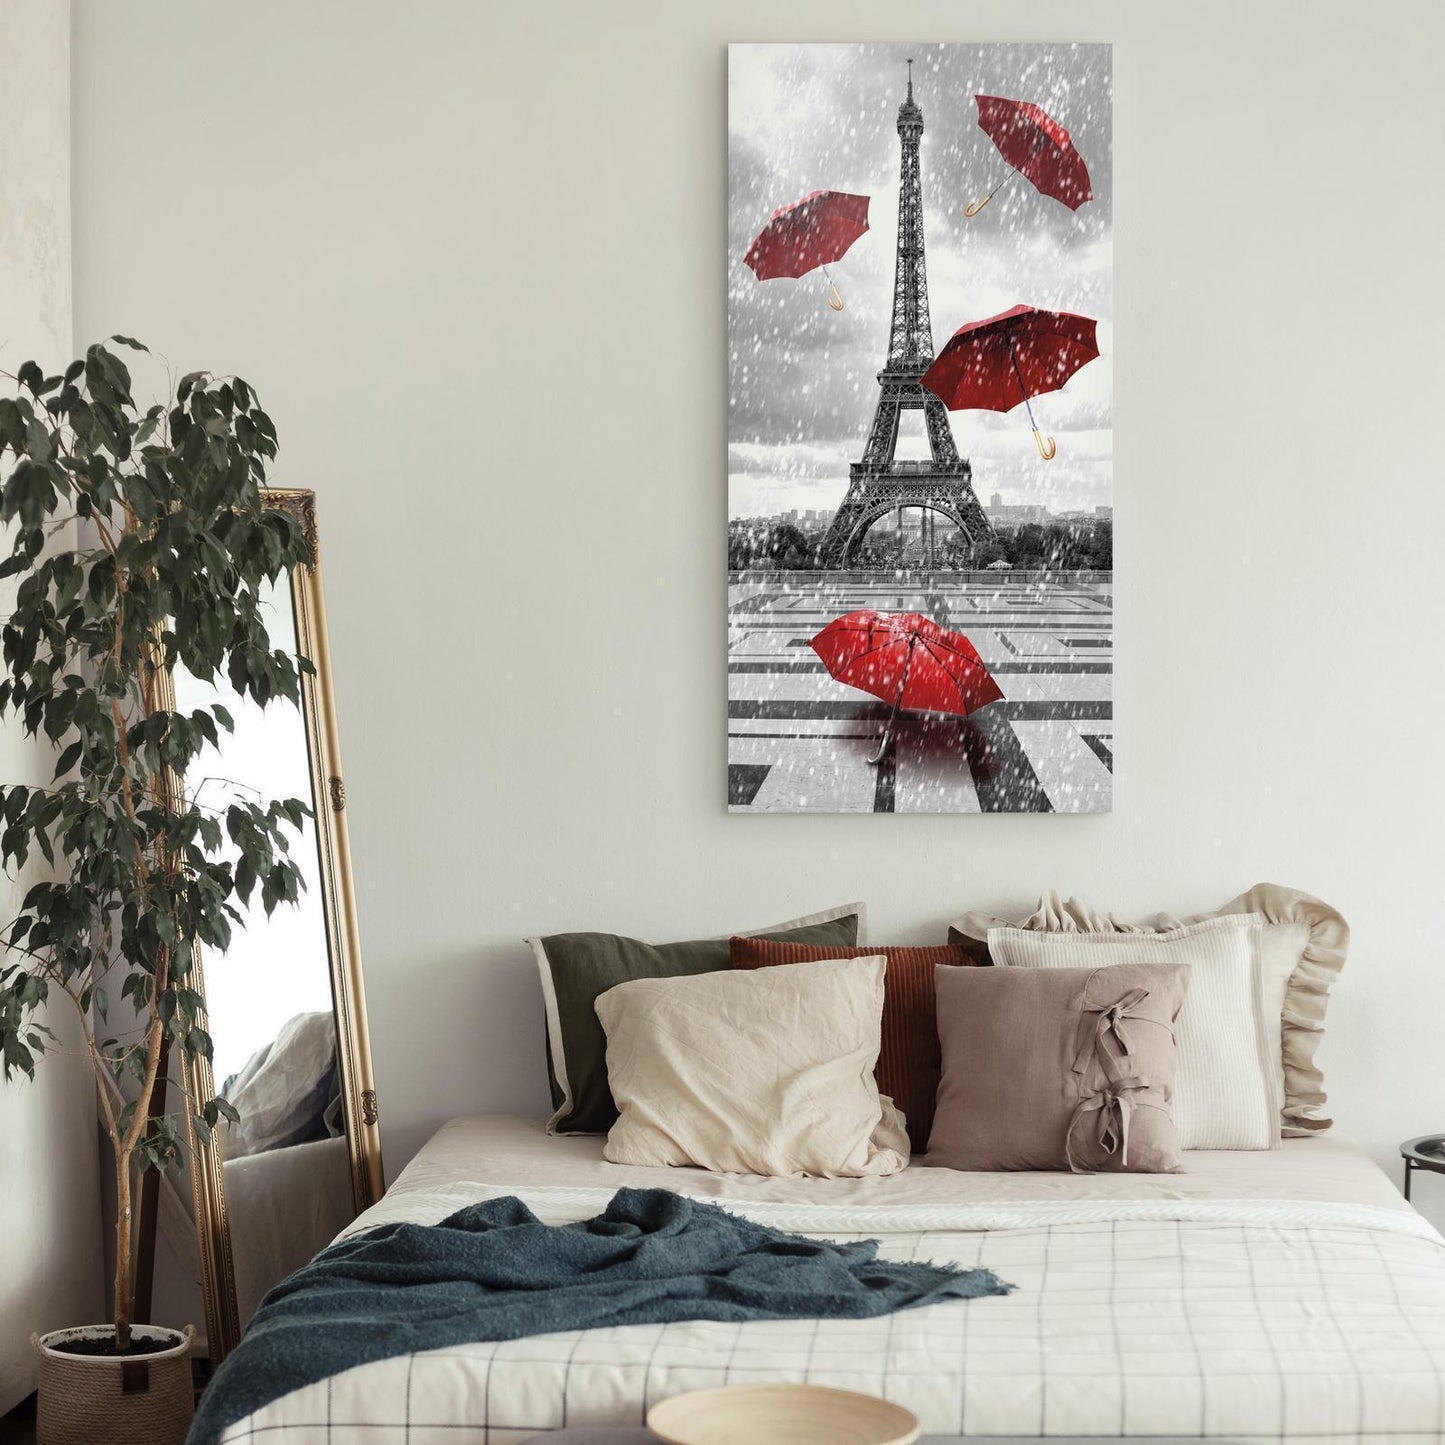 Painting - Paris: Red Umbrellas